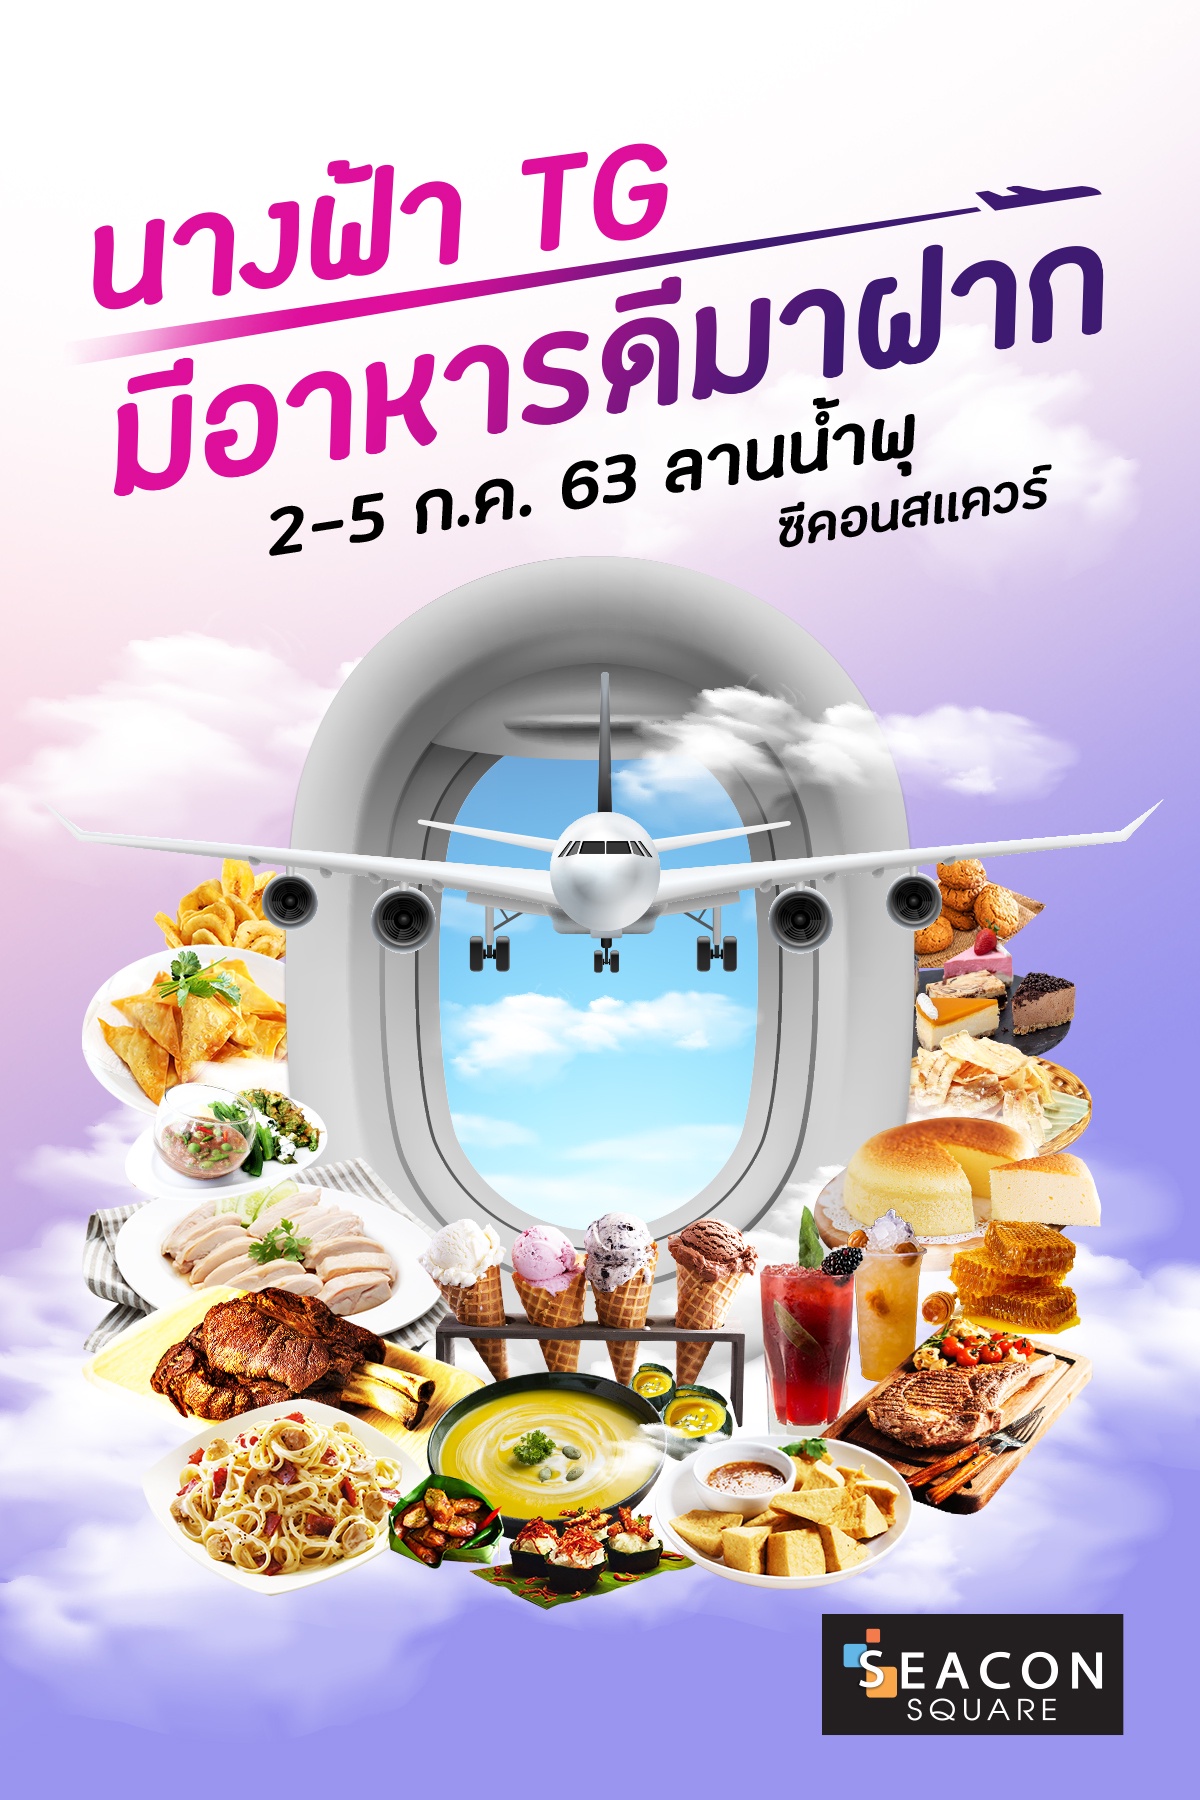 นางฟ้า TG มีอาหารดีมาฝาก ชวนลิ้มชิมรส 130 เมนูเด็ดแอร์สจ๊วตการบินไทย